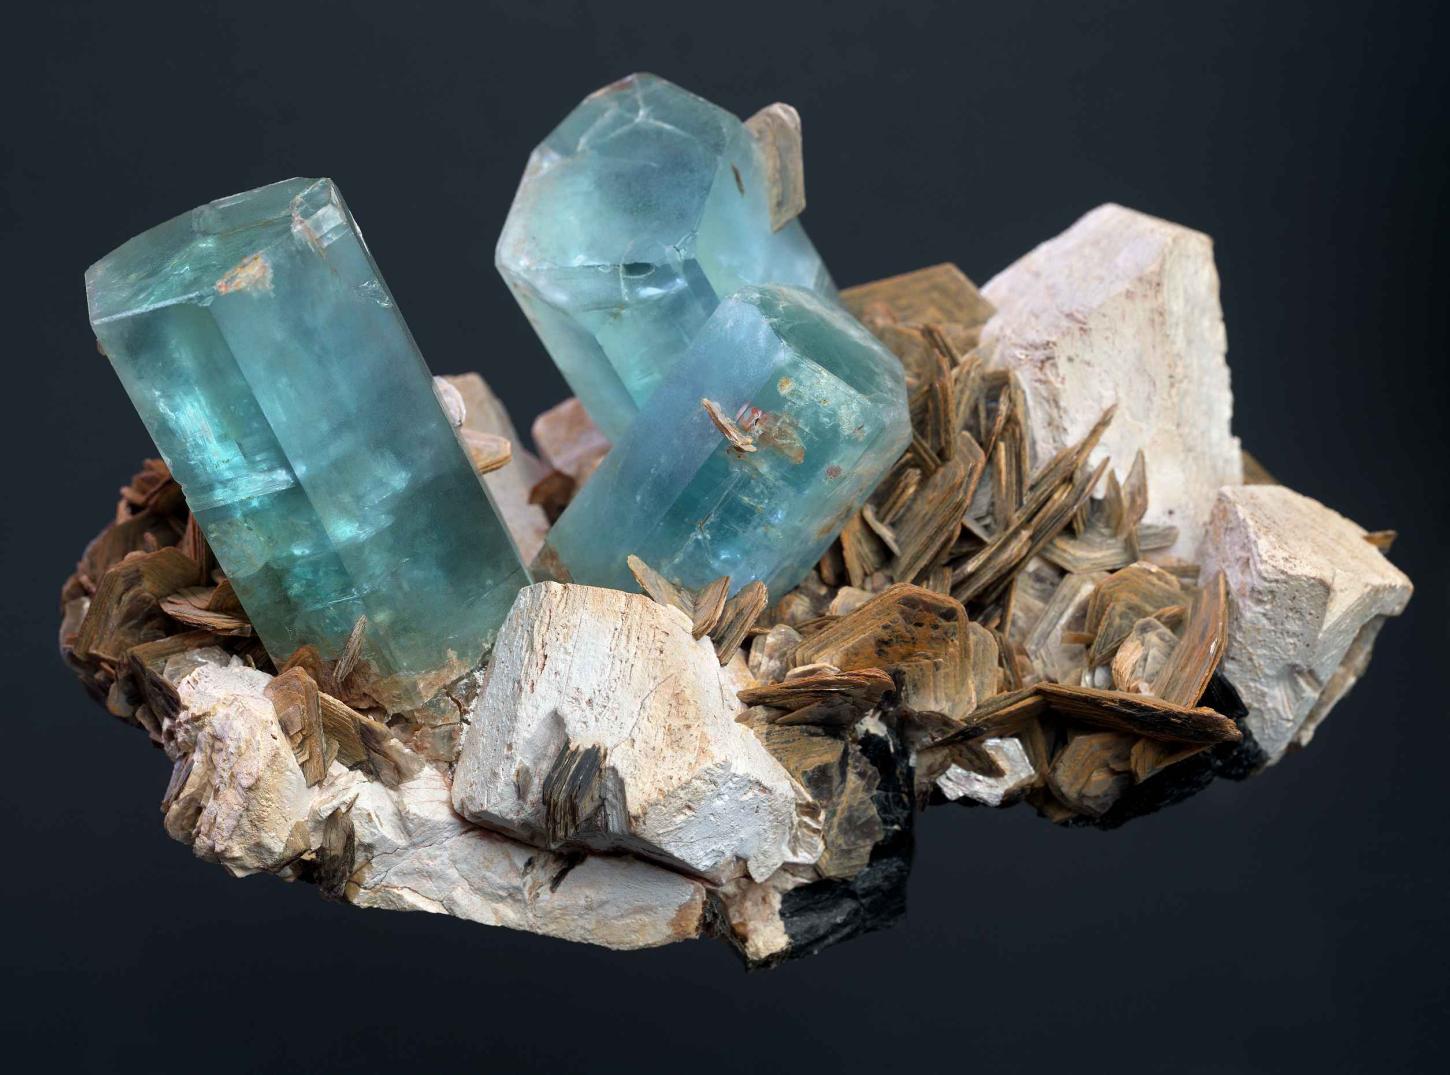 drei himmelblaue Aquamarinkristalle stehen als lange Prismen auf blättrigem braunen Muskovitkristallen sowie blockigen hell beigen Feldspäten